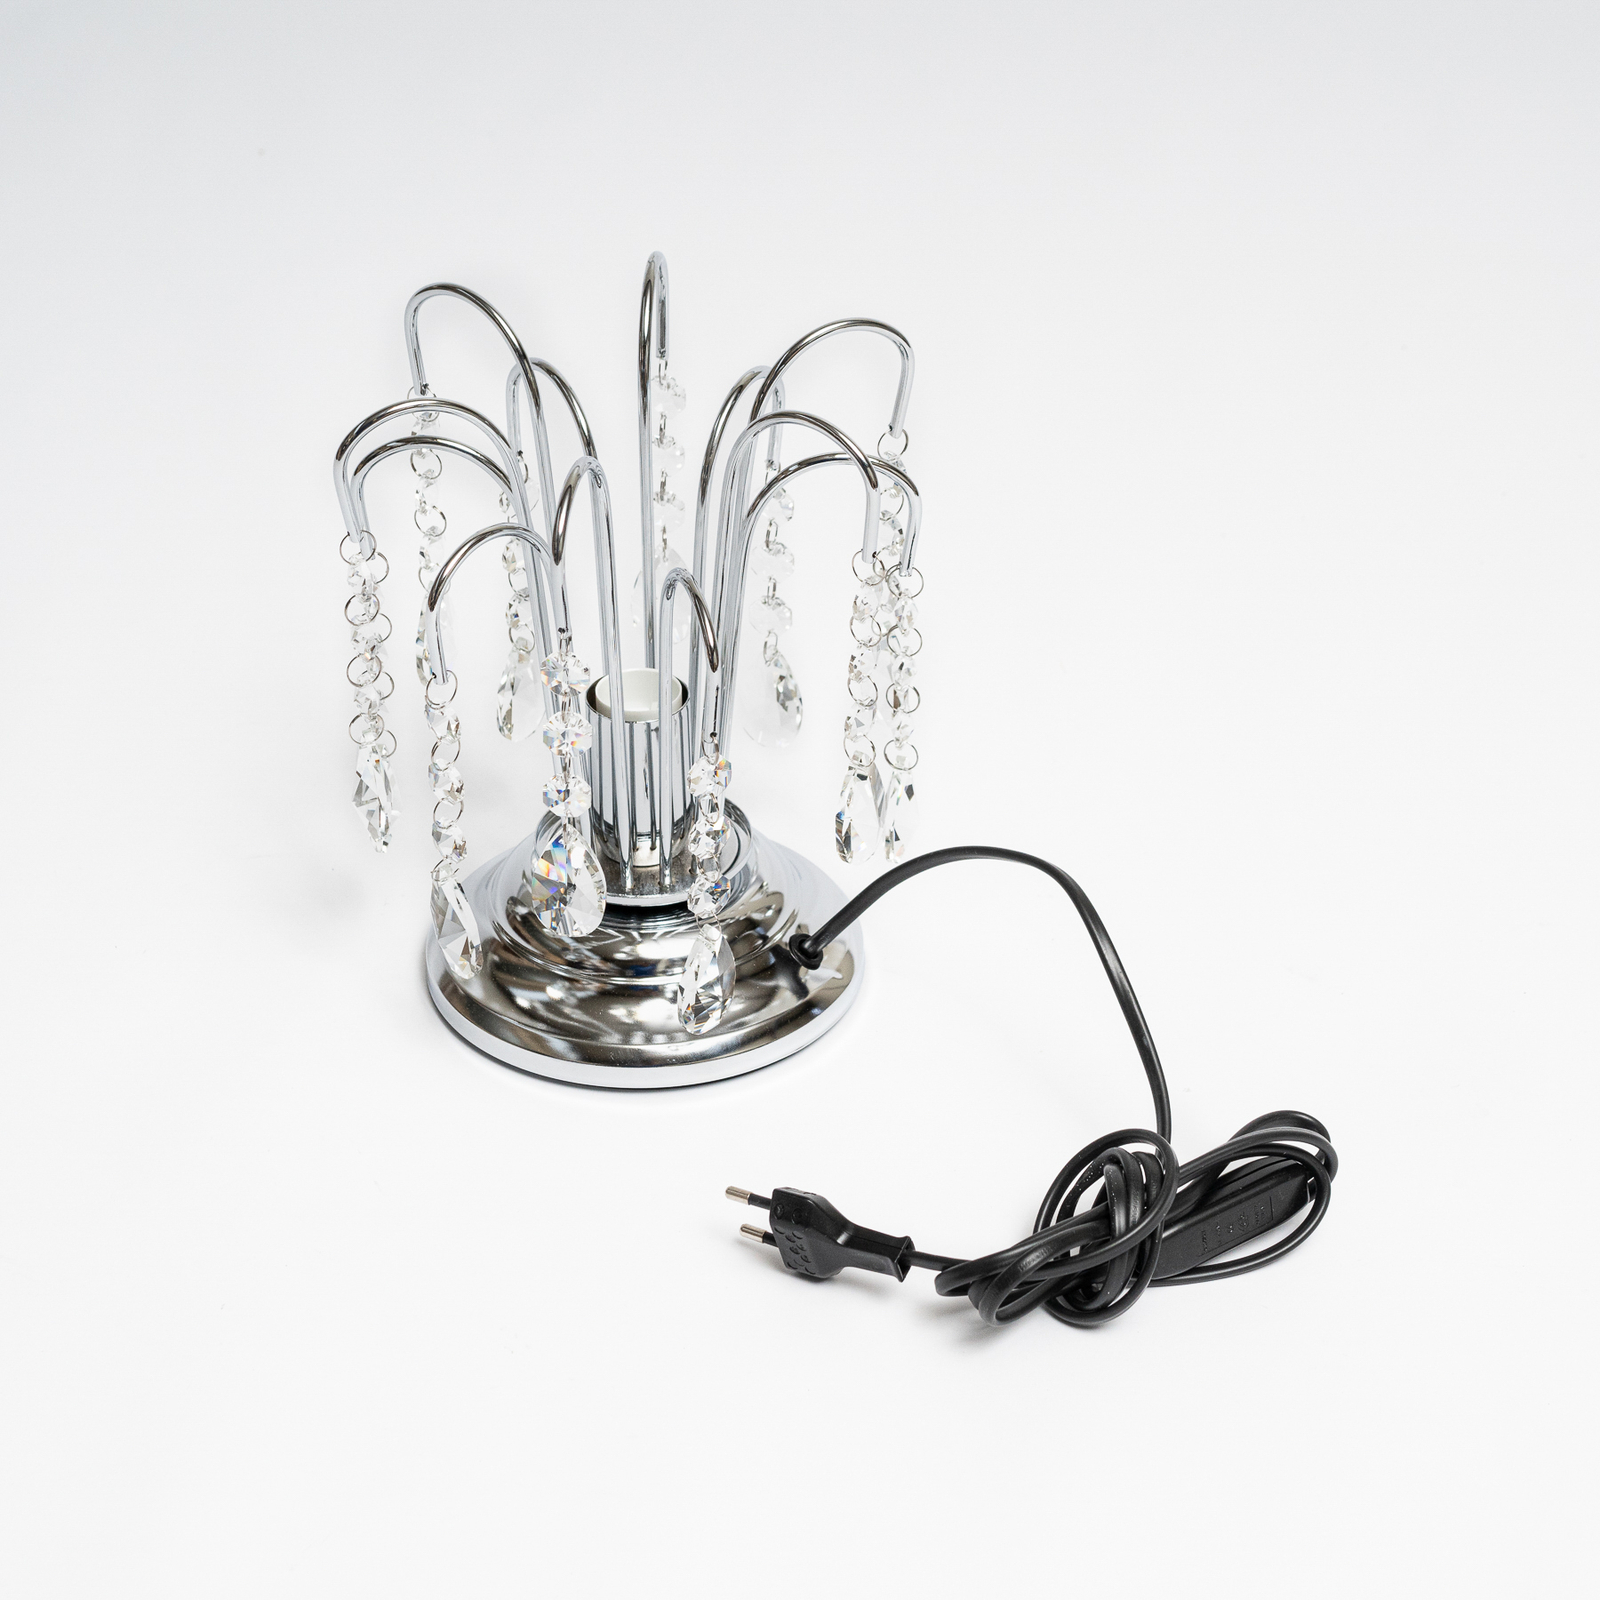 Tischlampe Pioggia mit Kristallregen, 26cm, chrom